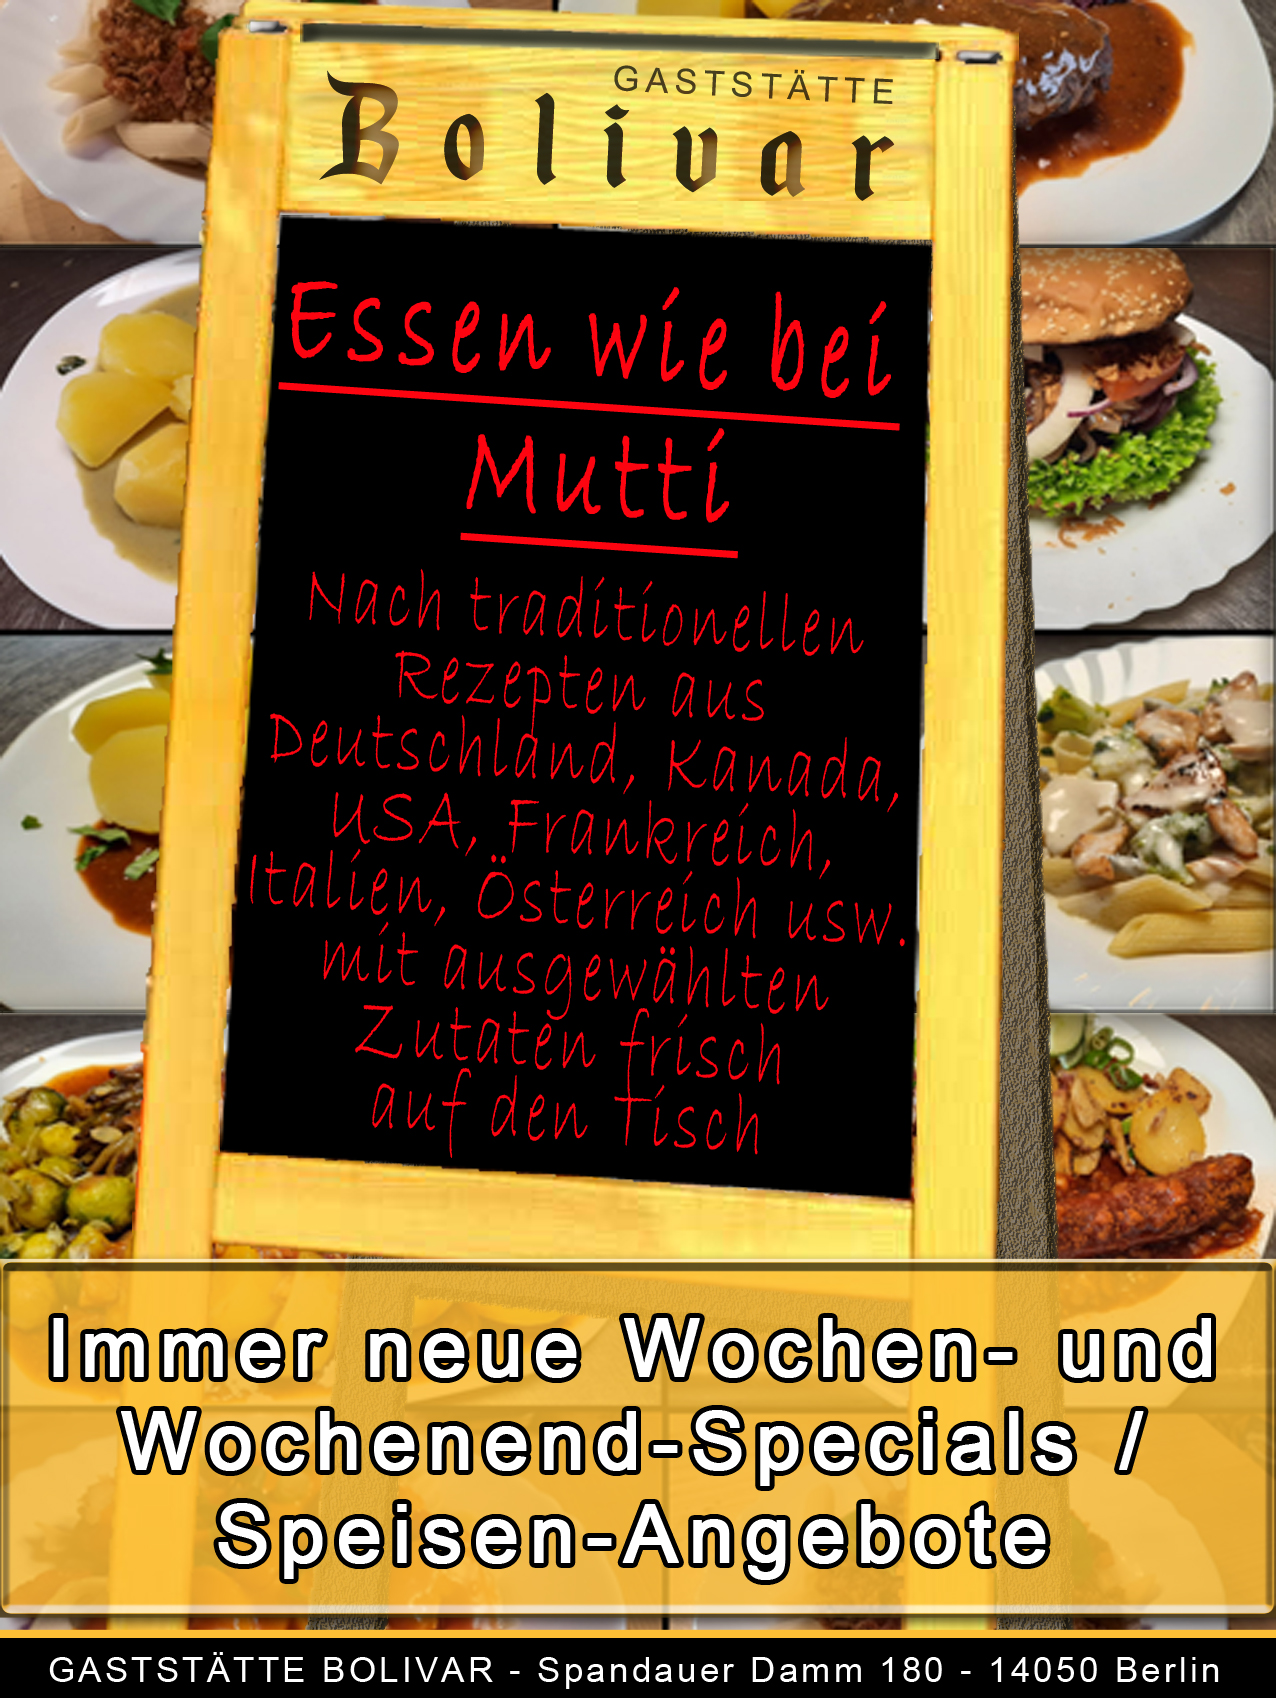 bolivar-berlin-charlottenburg-wilmersdorf-spandau-siemensstadt-westend-angebot-wochendliche-wechselnde-speisekarte-essen-wie-bei-mutti